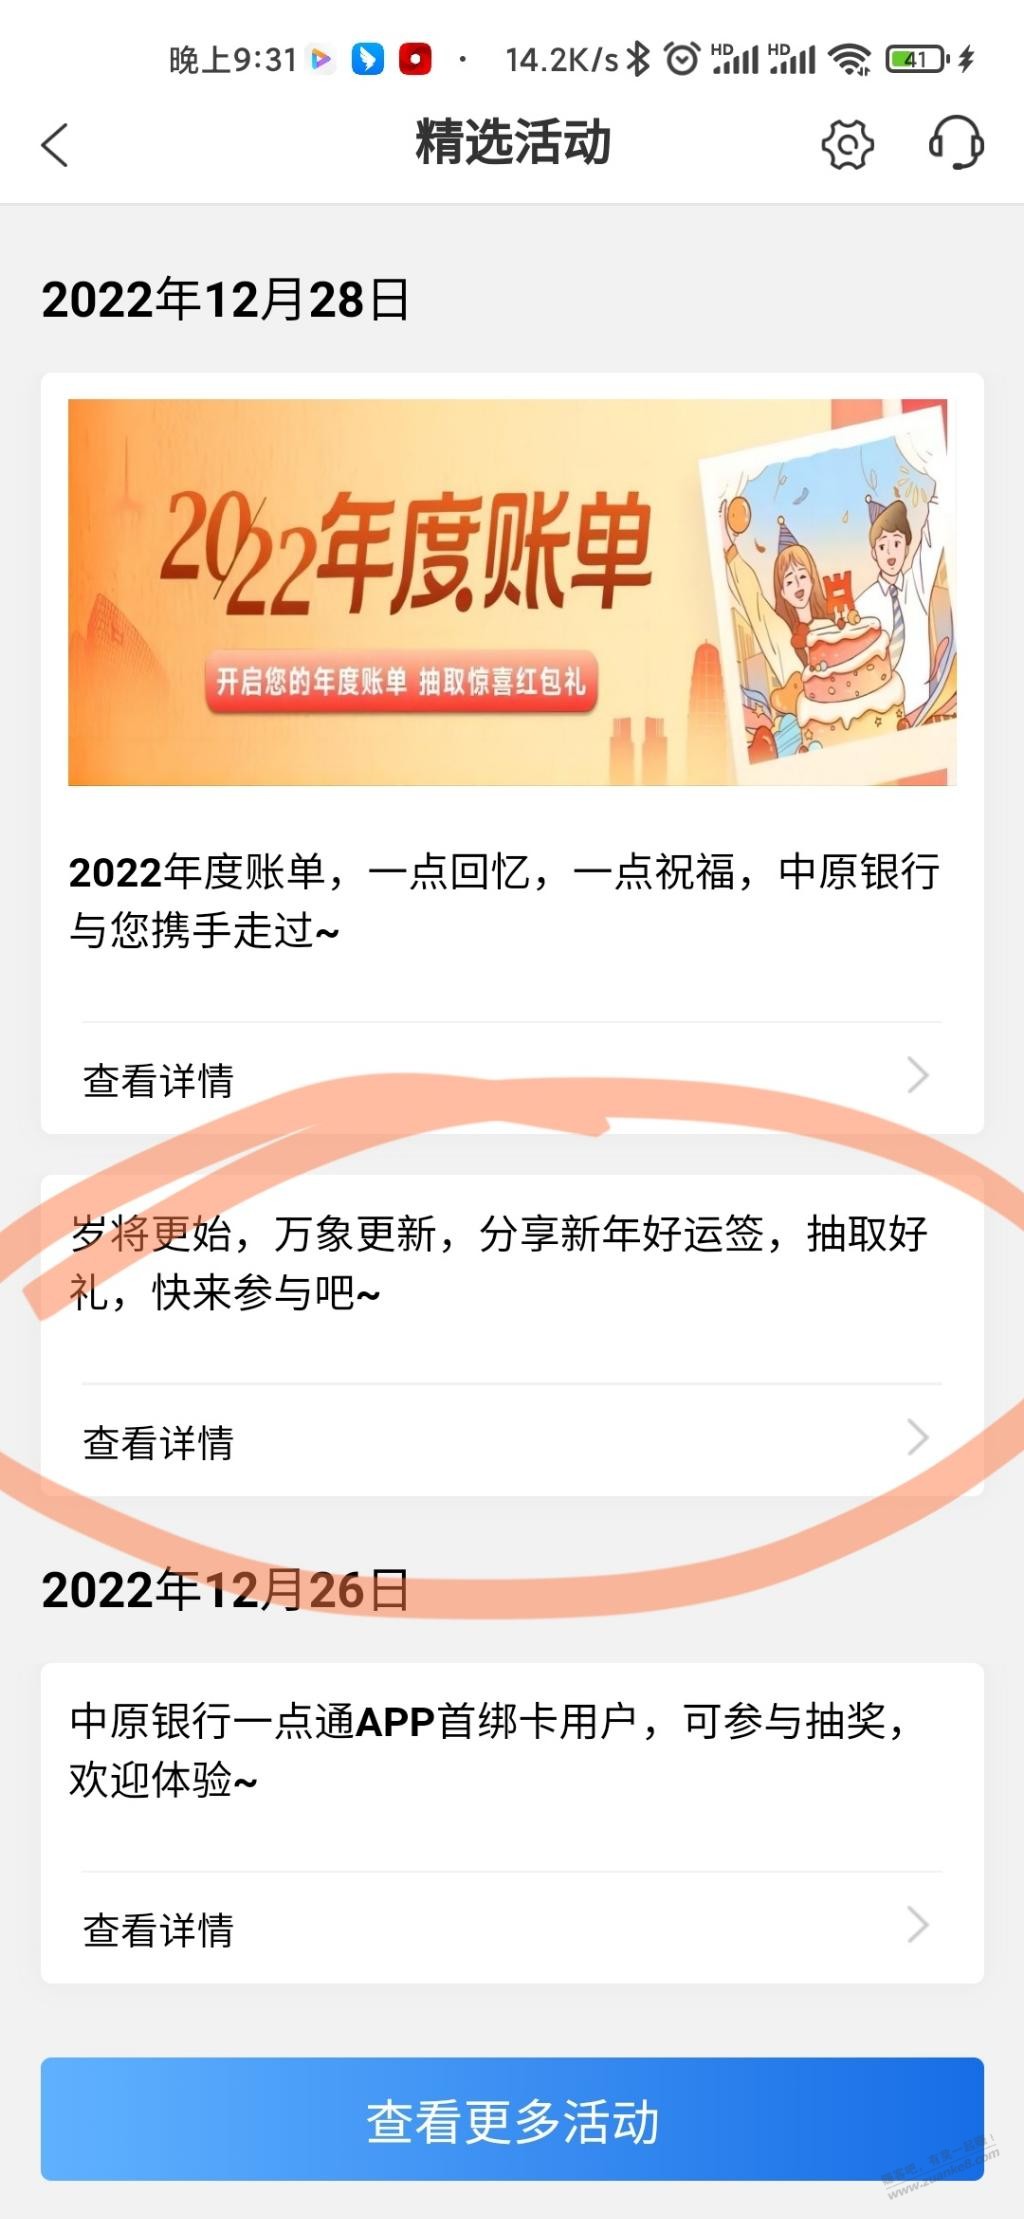 中原yh小毛-app-惠小助(52huixz.com)